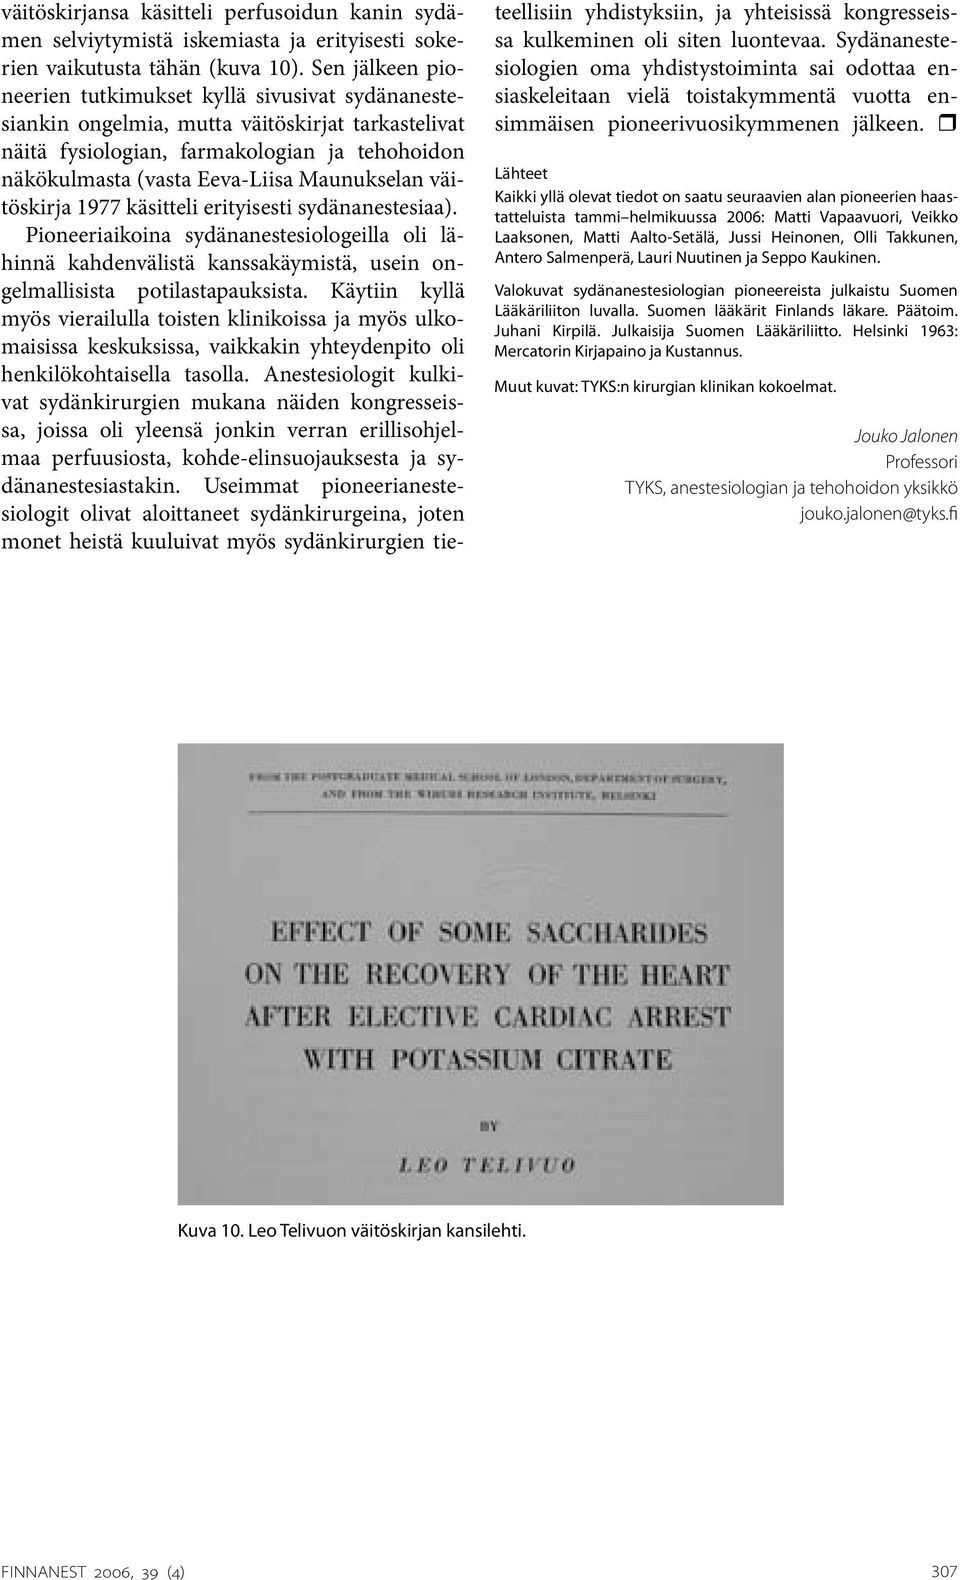 Maunukselan väitöskirja 1977 käsitteli erityisesti sydänanestesiaa). Pioneeriaikoina sydänanestesiologeilla oli lähinnä kahdenvälistä kanssakäymistä, usein ongelmallisista potilastapauksista.